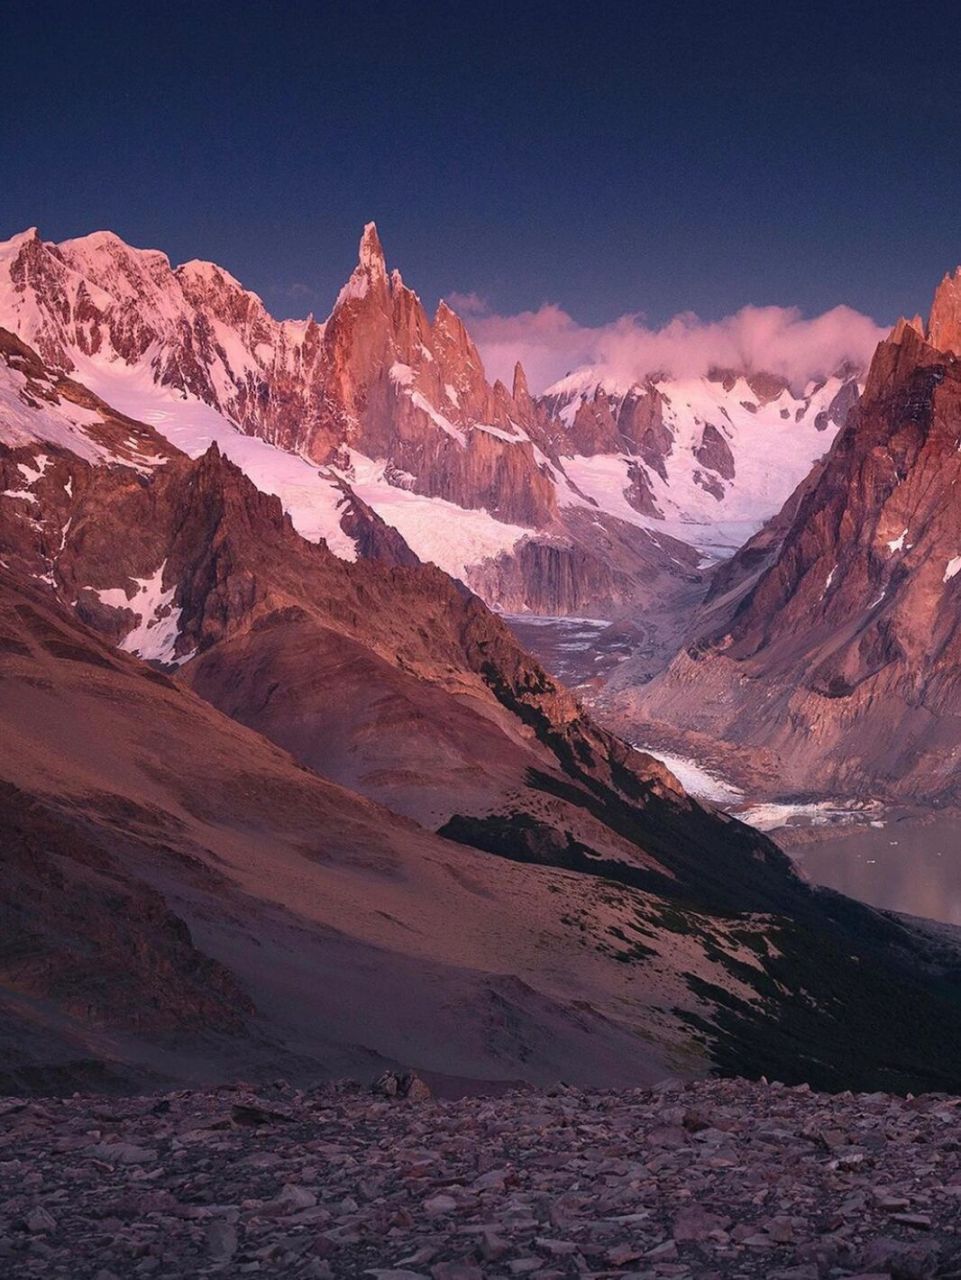 雄伟壮阔的安第斯山脉 一路从北到南的洗礼  属于科迪勒拉山系,位于